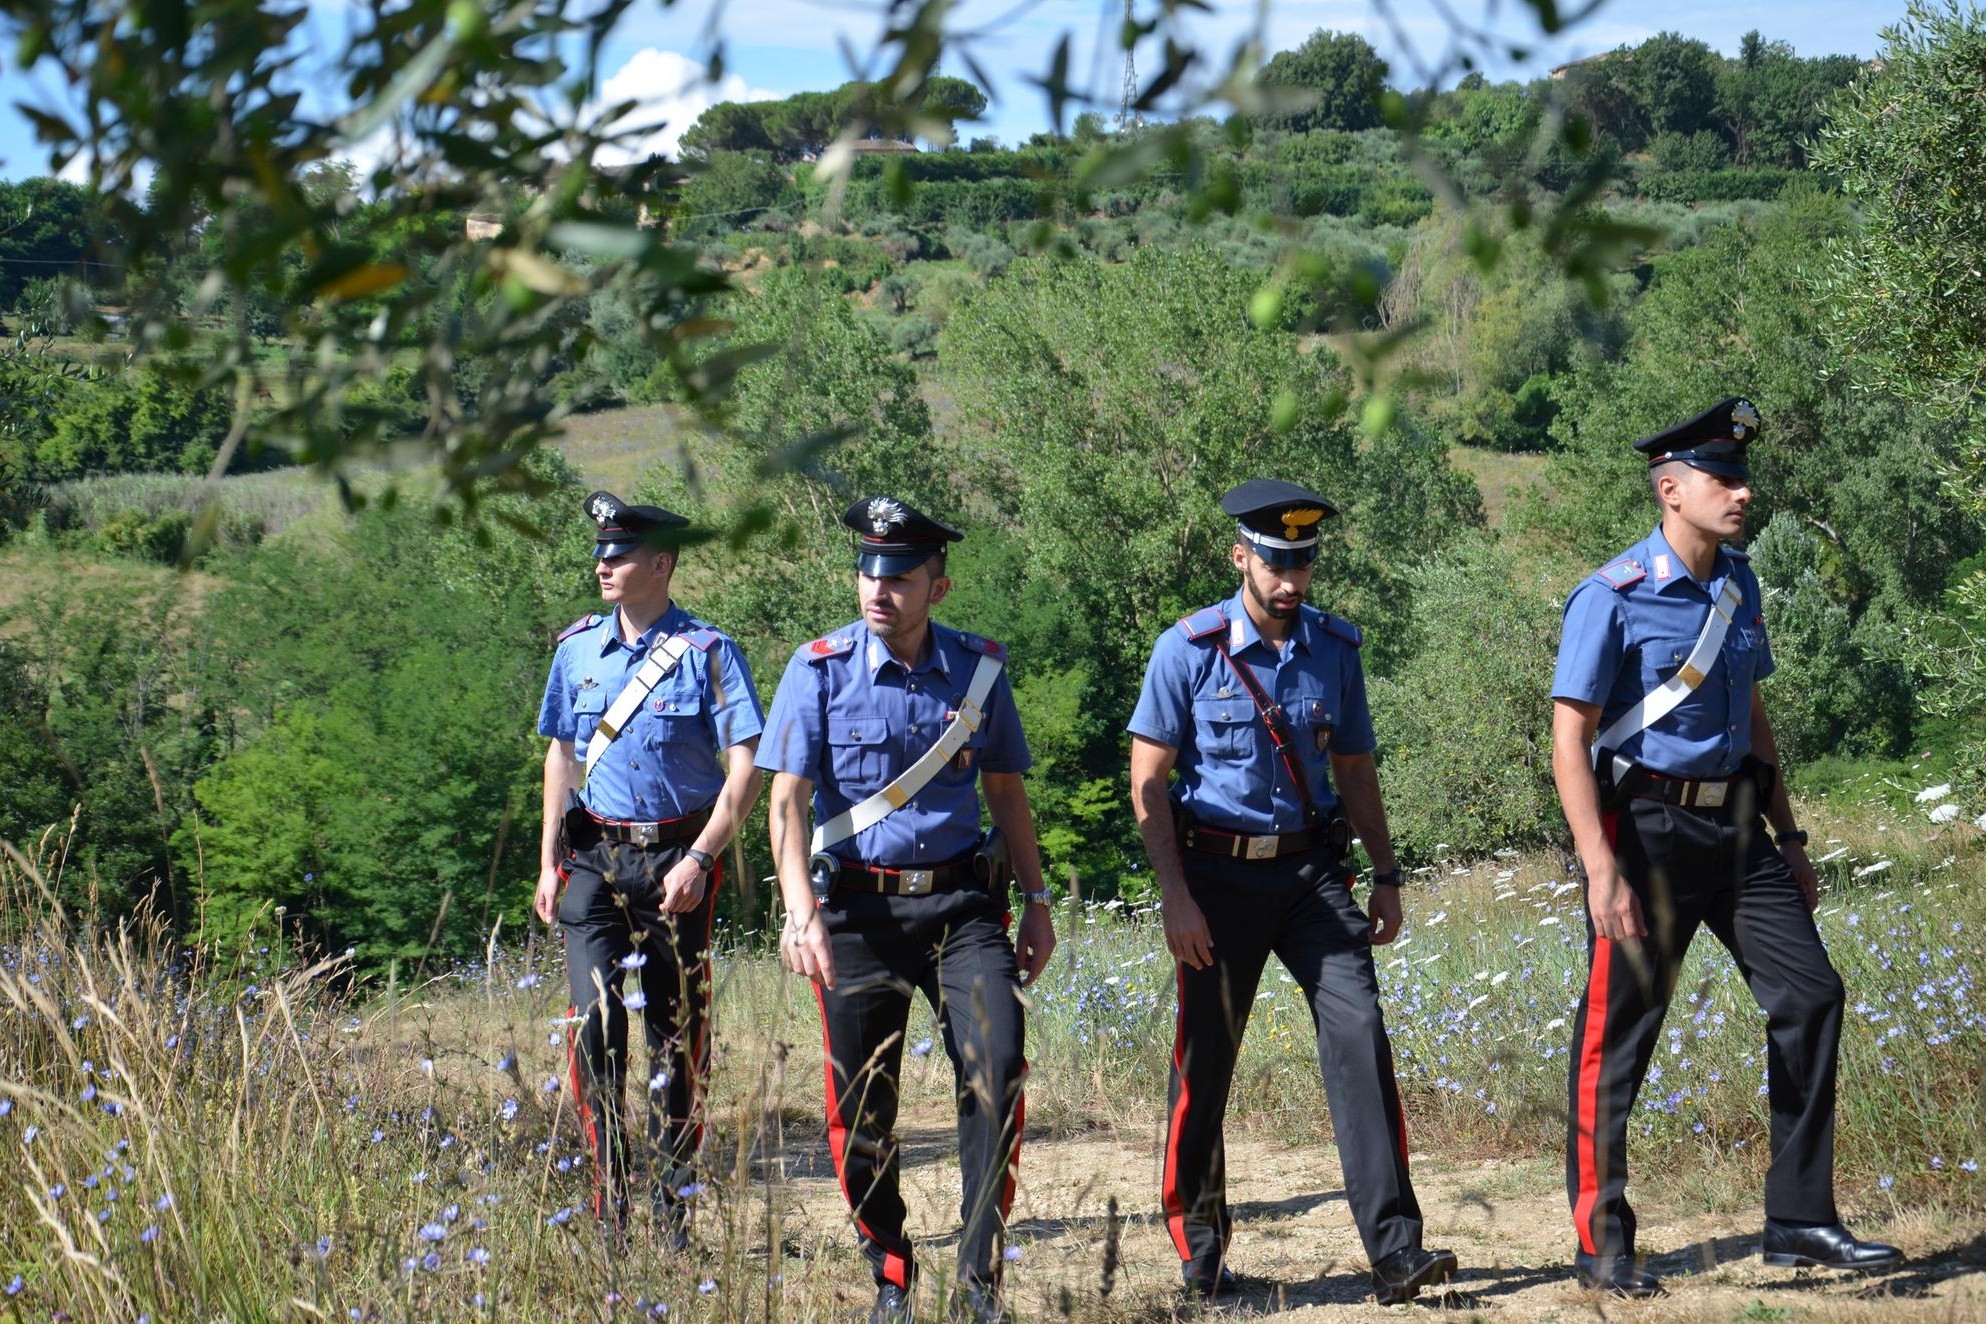 Villasor, due lavoratori in nero nel campo di carciofi: arrivano i carabinieri